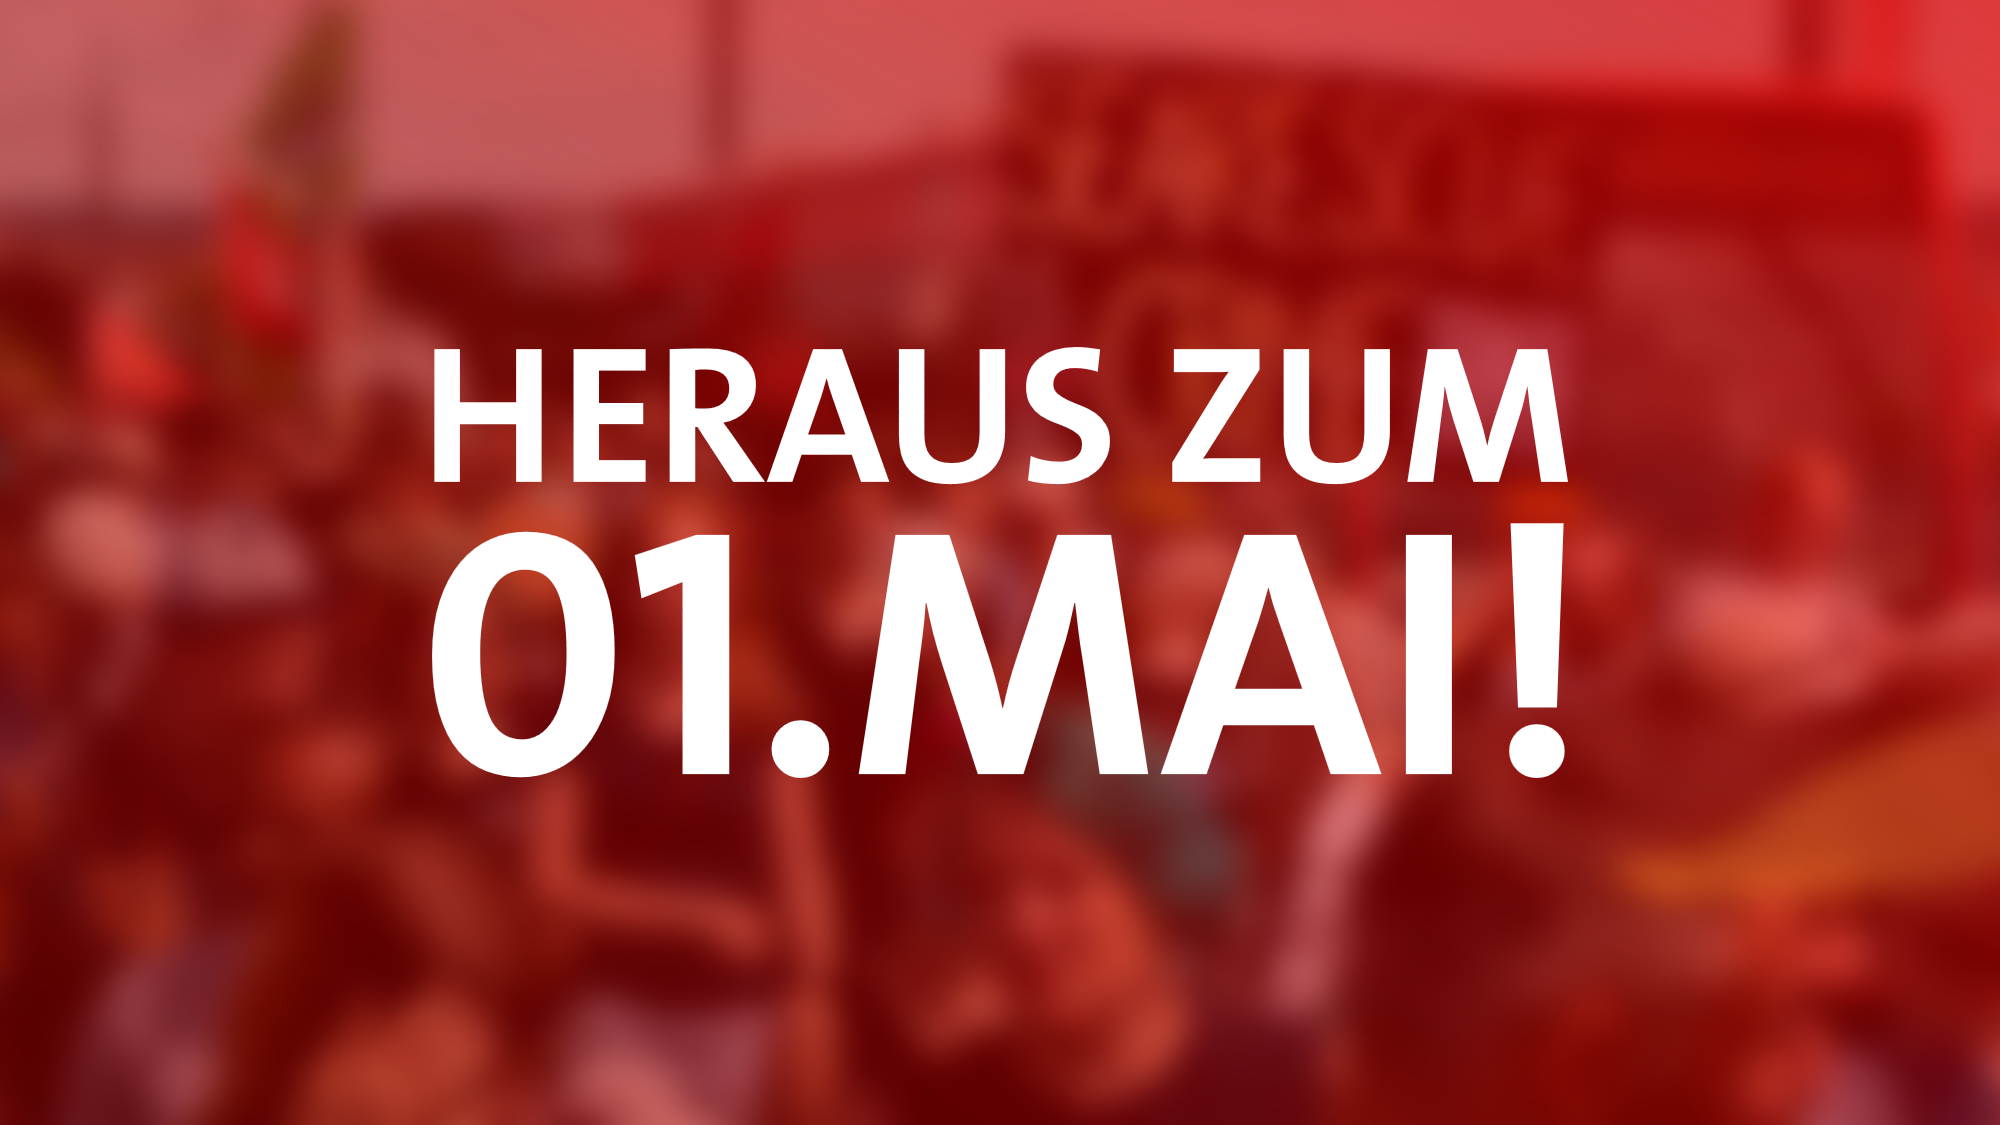 Elisabeth Kaiser: „Gemeinsam Zukunft gestalten!“ SPD Gera ruft zur Teilnahme an der DGB-Veranstaltung zum 01. Mai auf